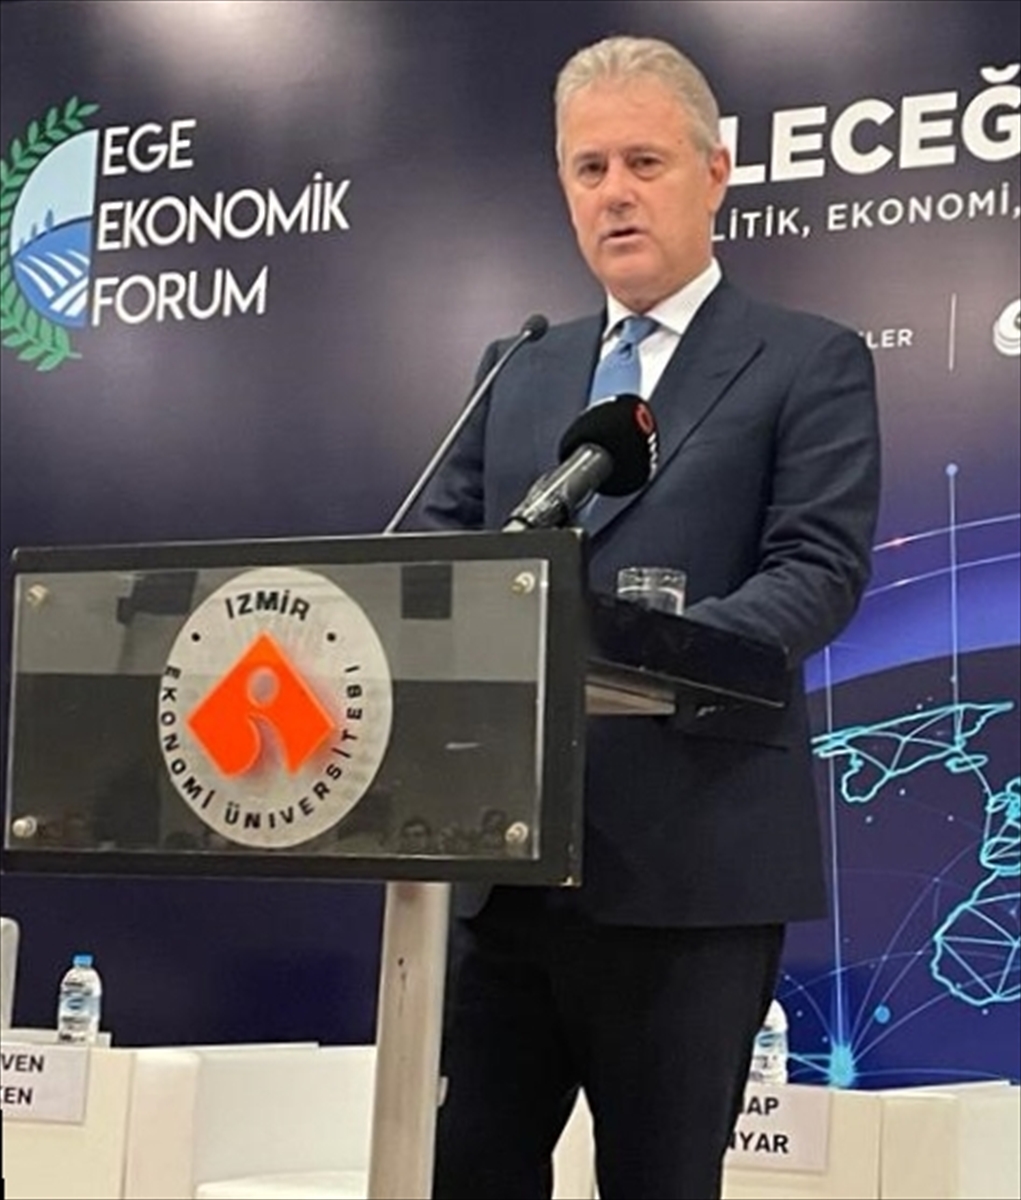 İzmir'de “6. Ege Ekonomik Forumu” başladı